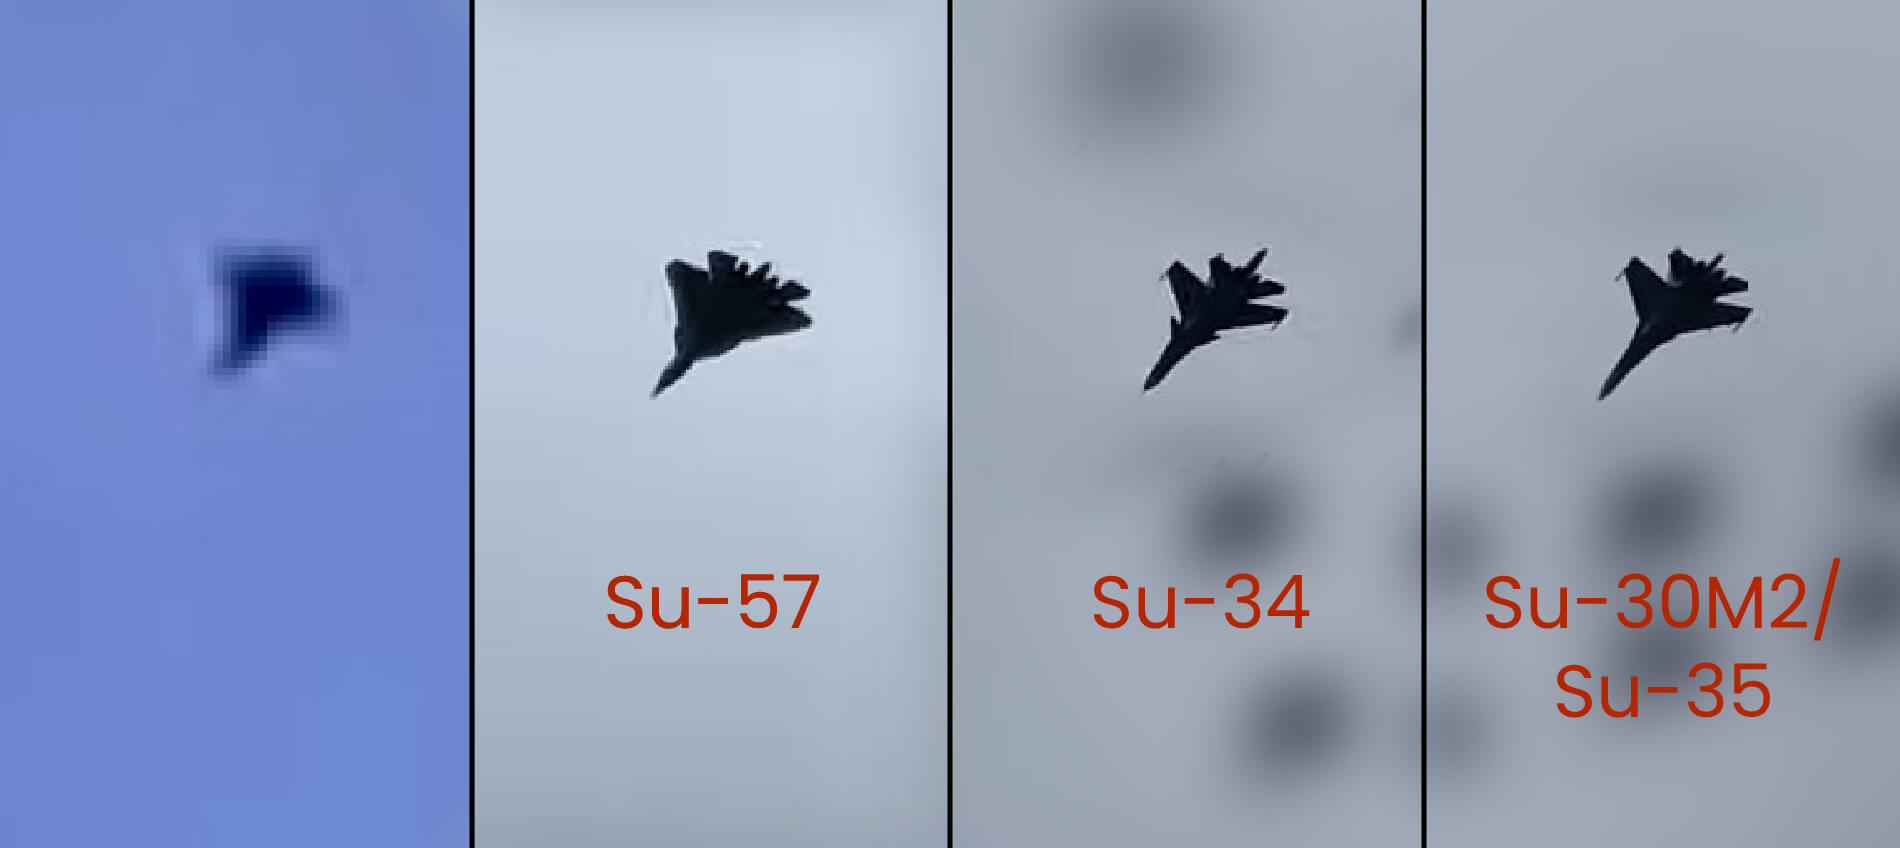 Supposed Su-57 in Ukraine 2